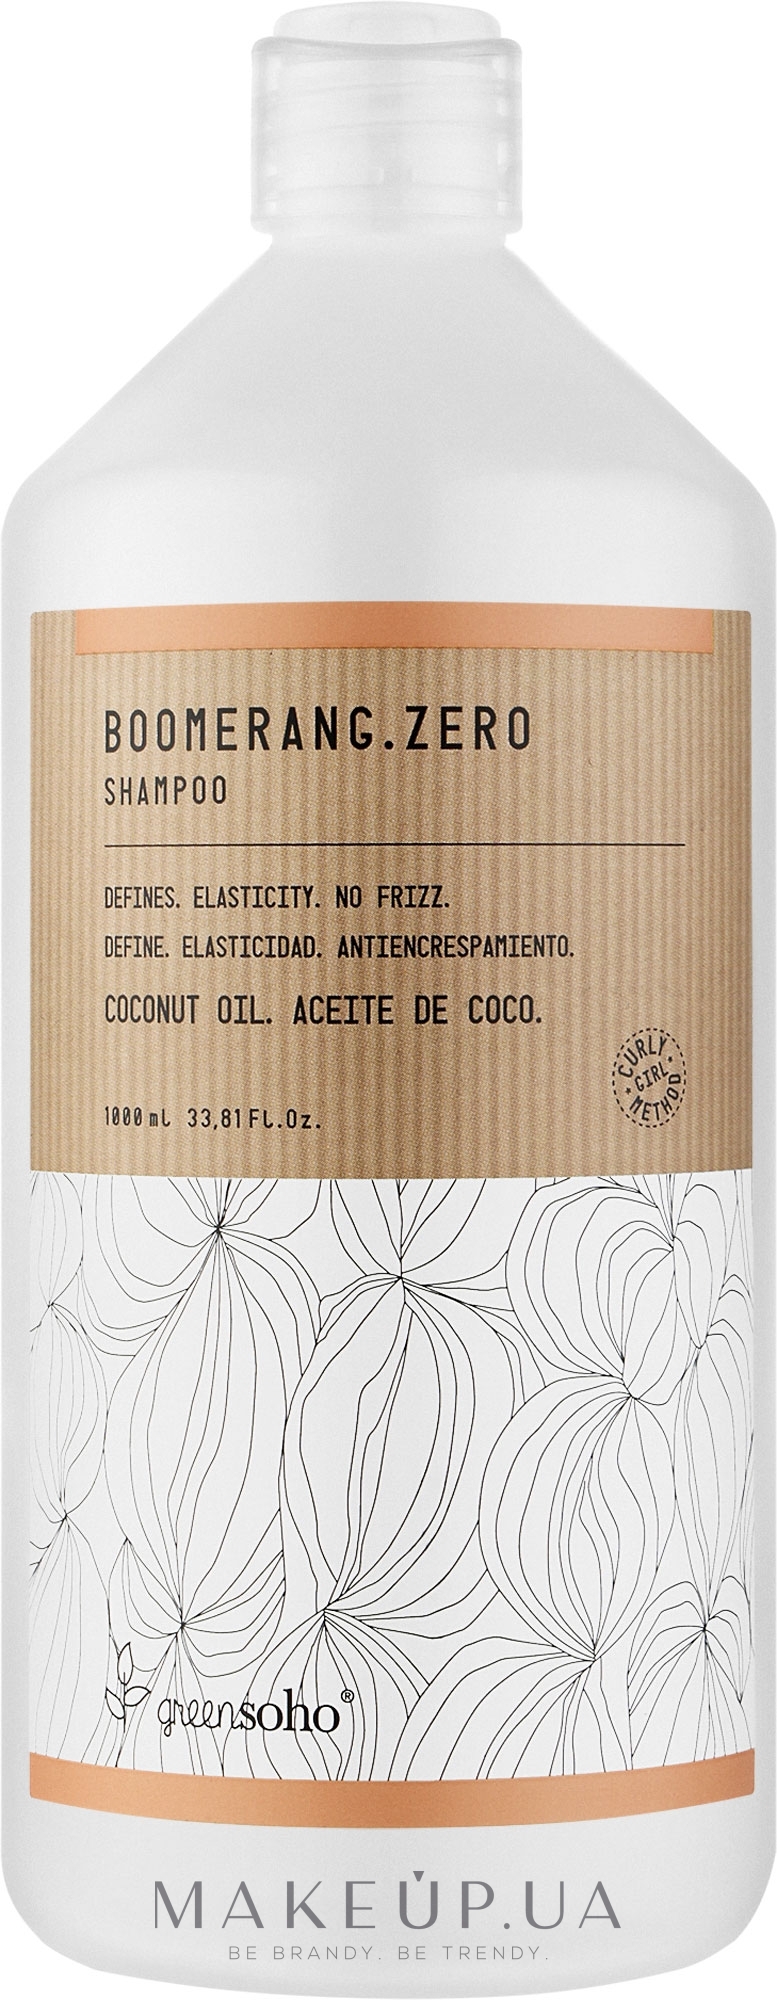 Зволожуючий шампунь для хвилястого та кучерявого волосся - GreenSoho Boomerang.Zero Shampoo — фото 1000ml